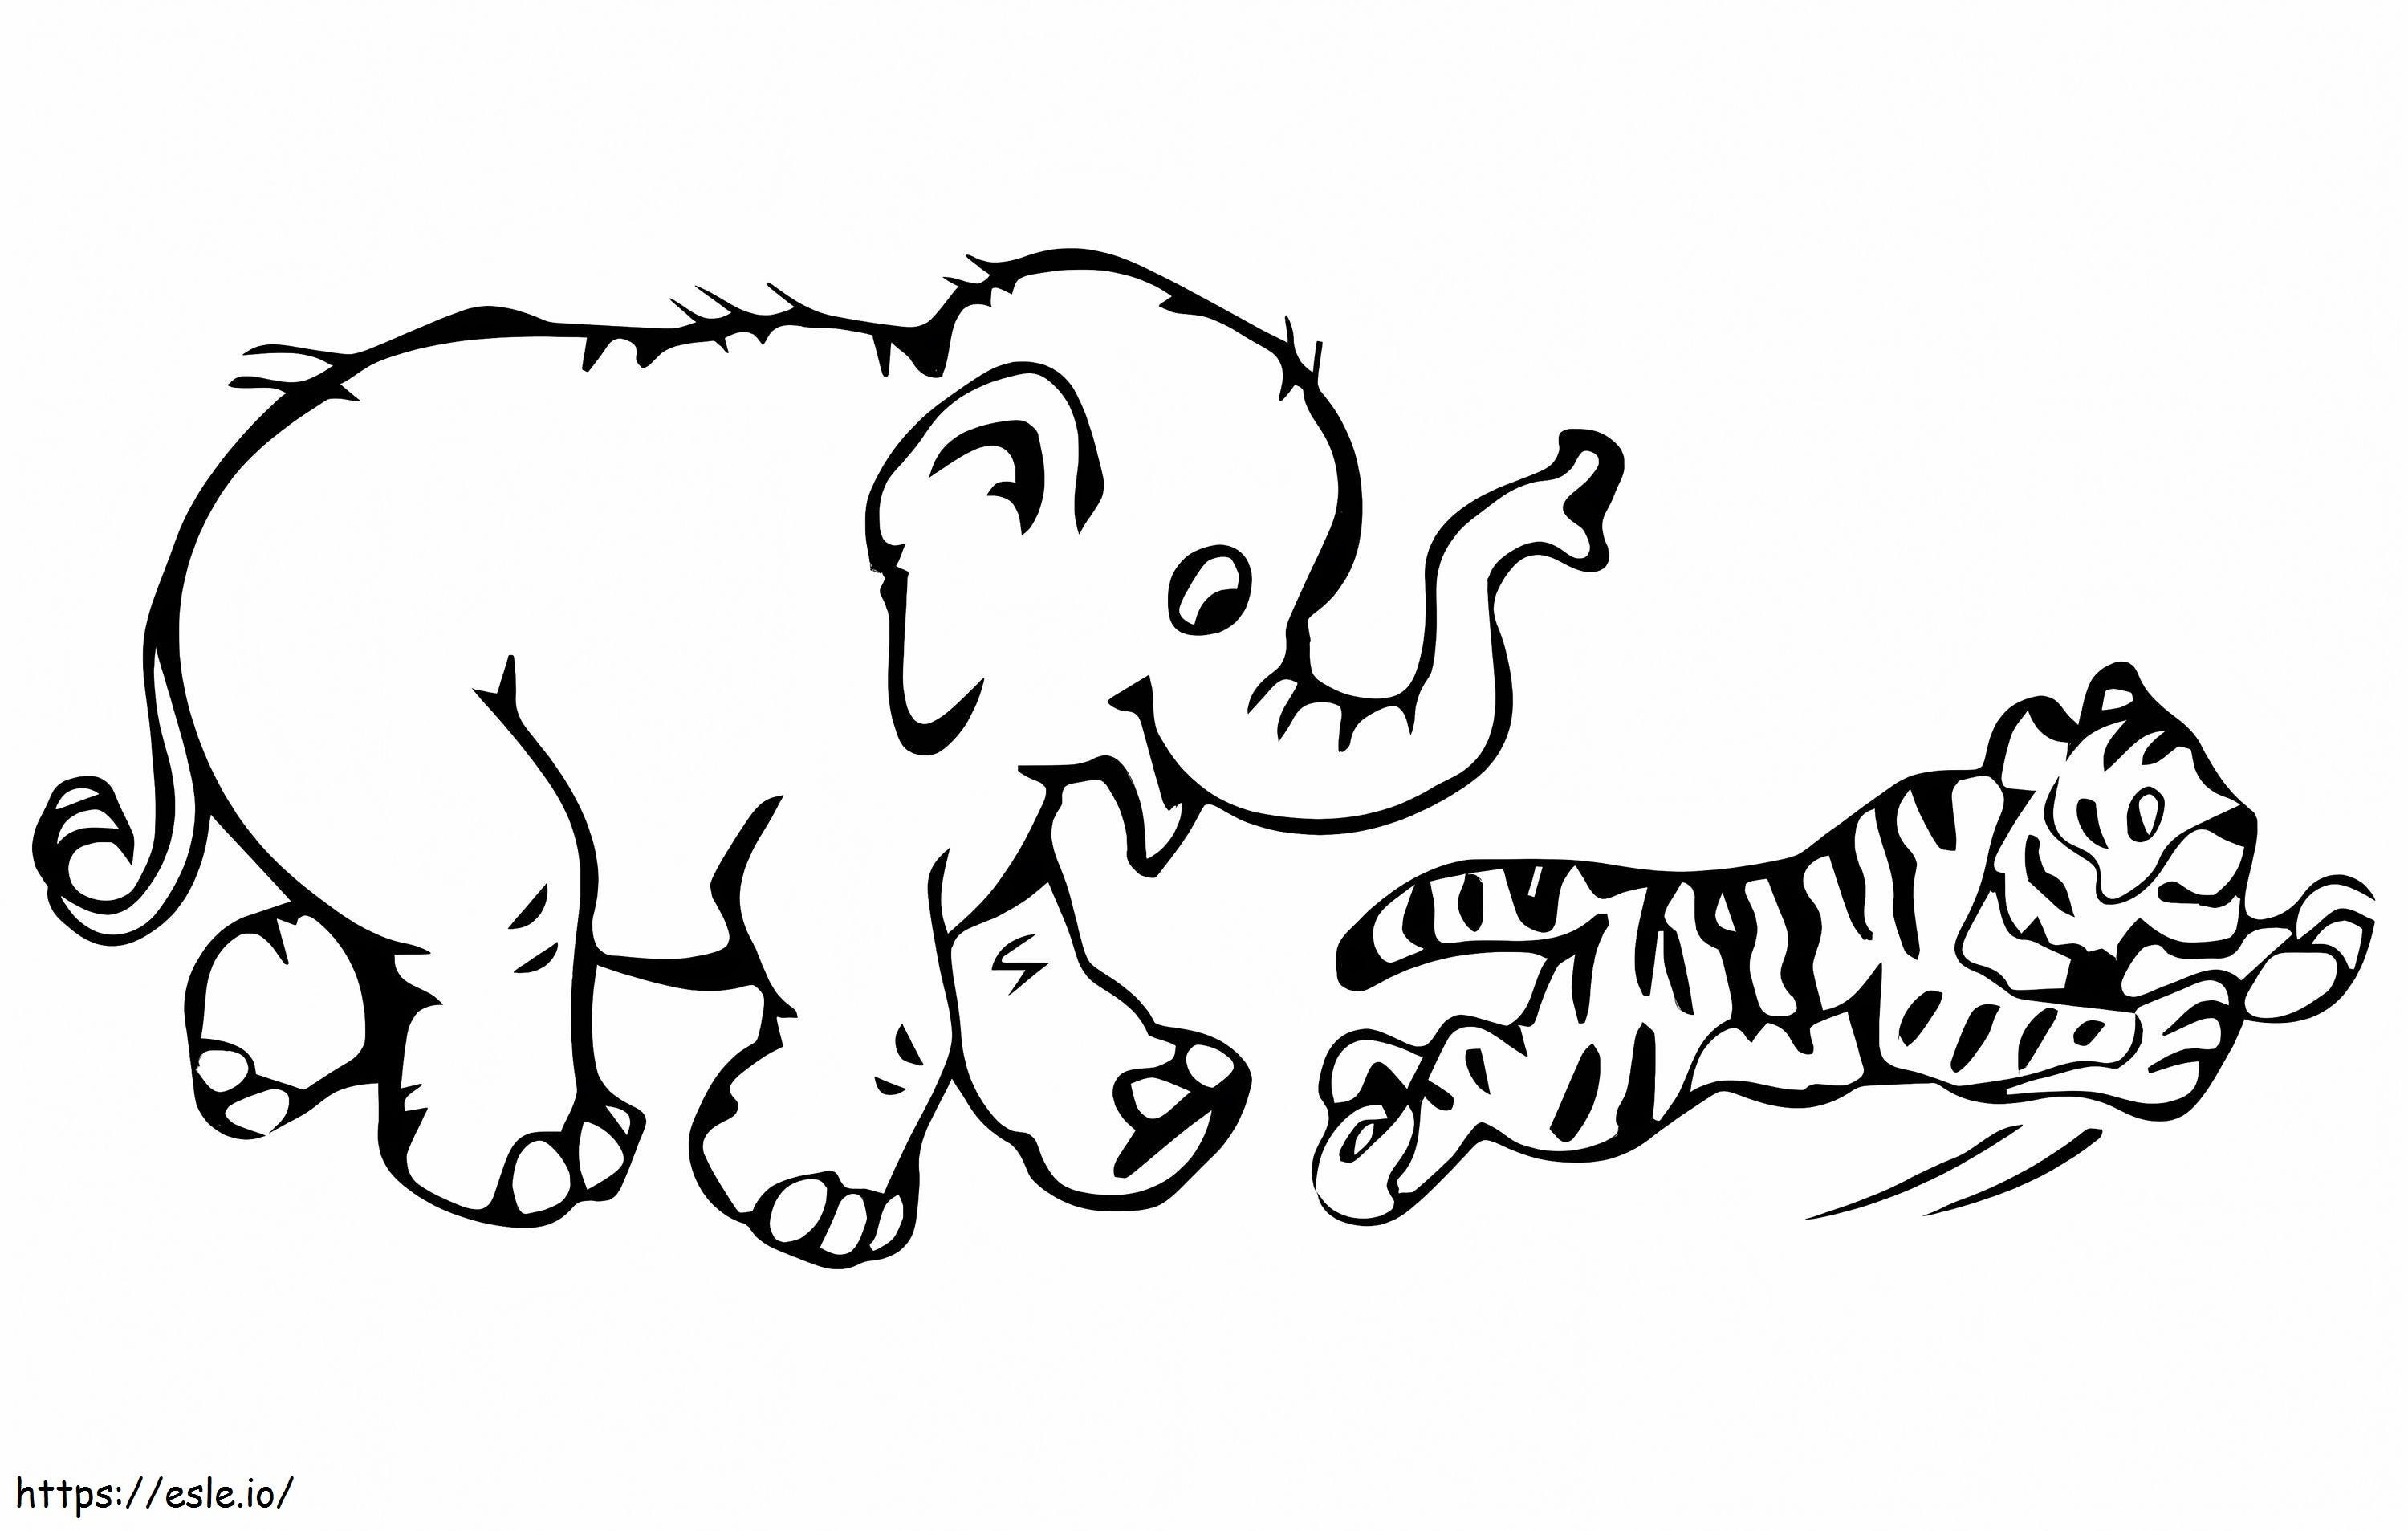 elefante y tigre para colorear